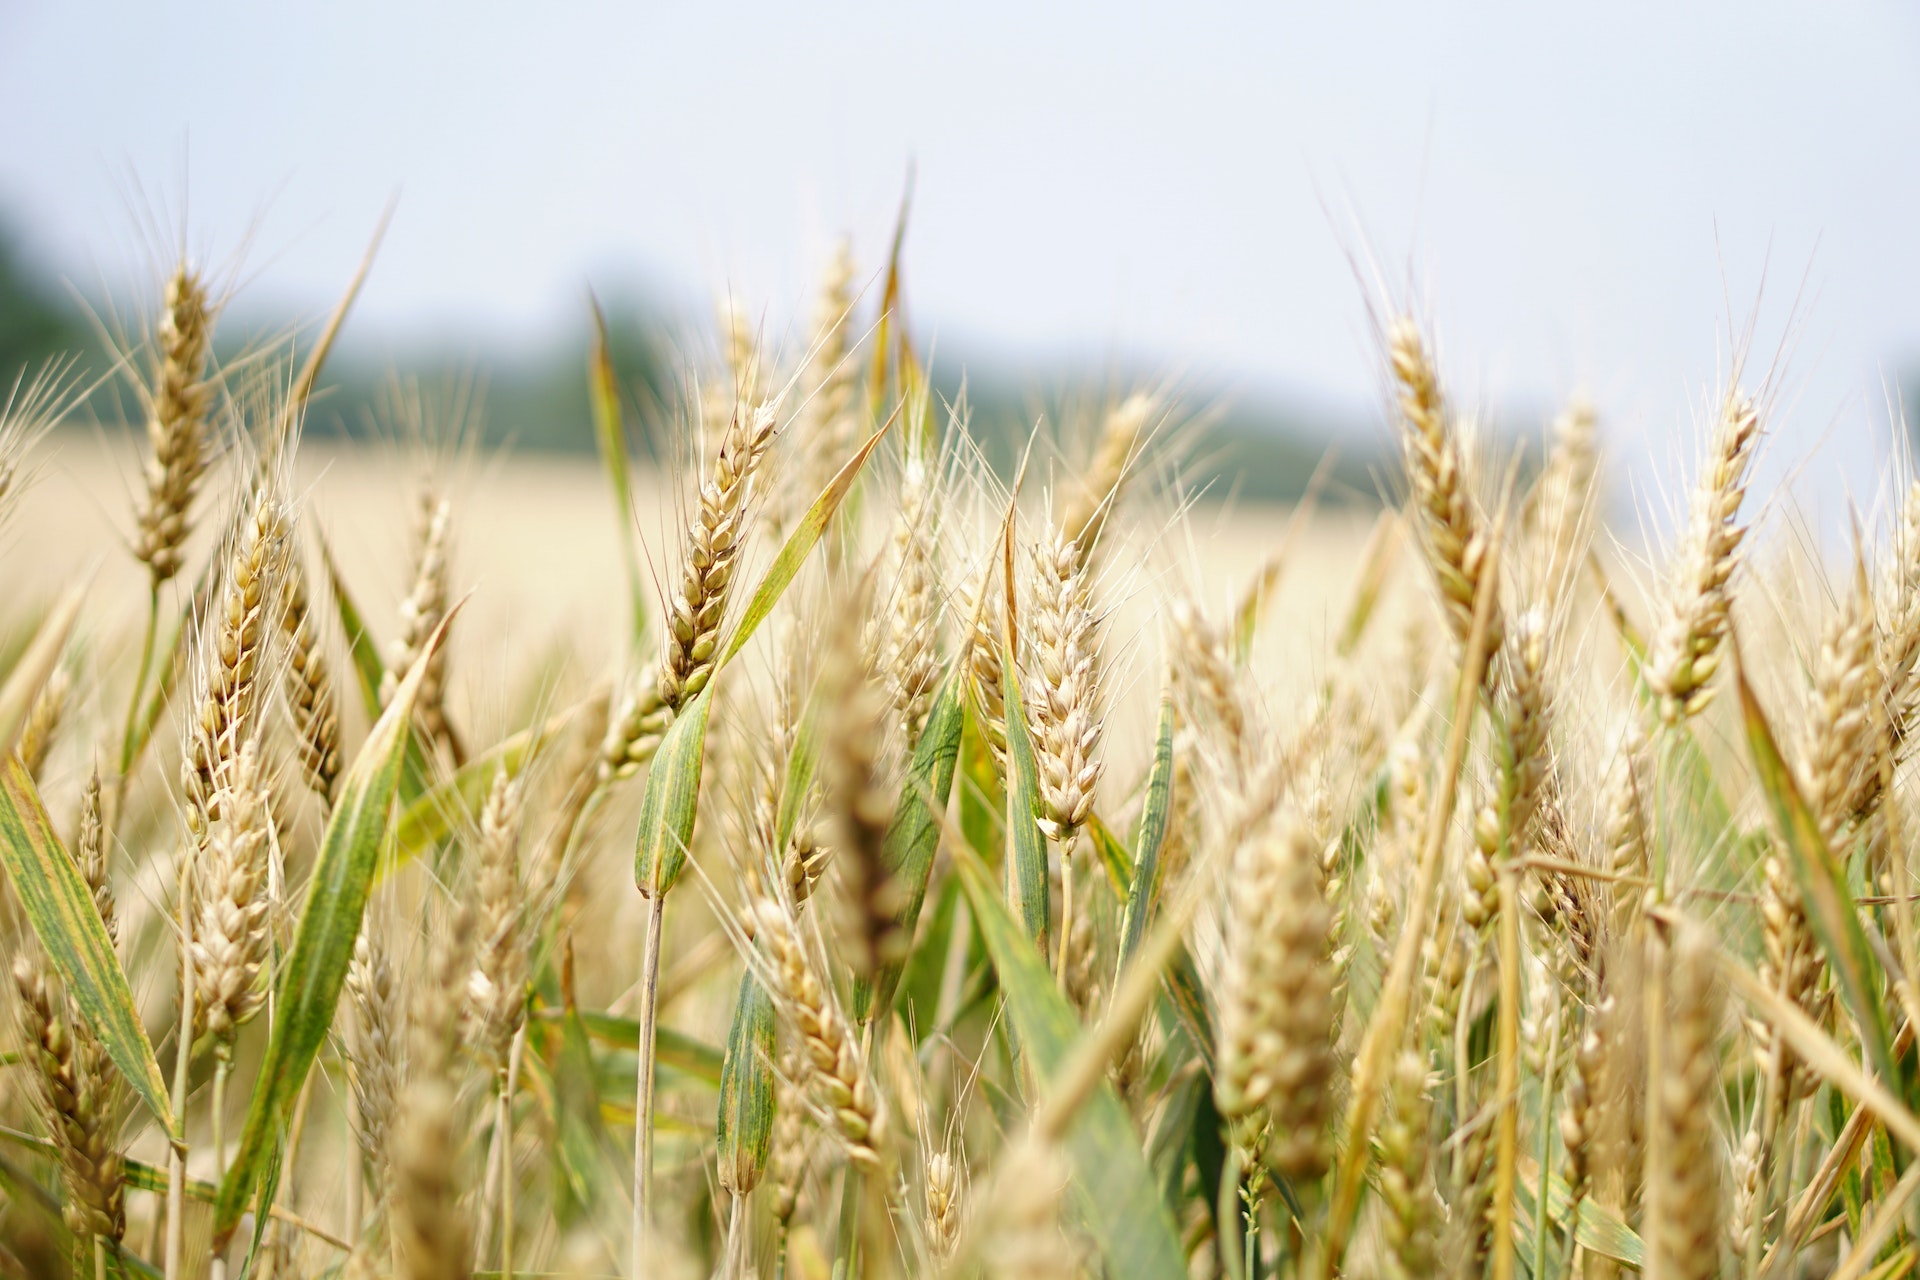 La Regione Lazio ha pubblicato il bando per richiedere i contributi destinati agli agricoltori con coltivazioni biologiche. Tutte le informazioni.